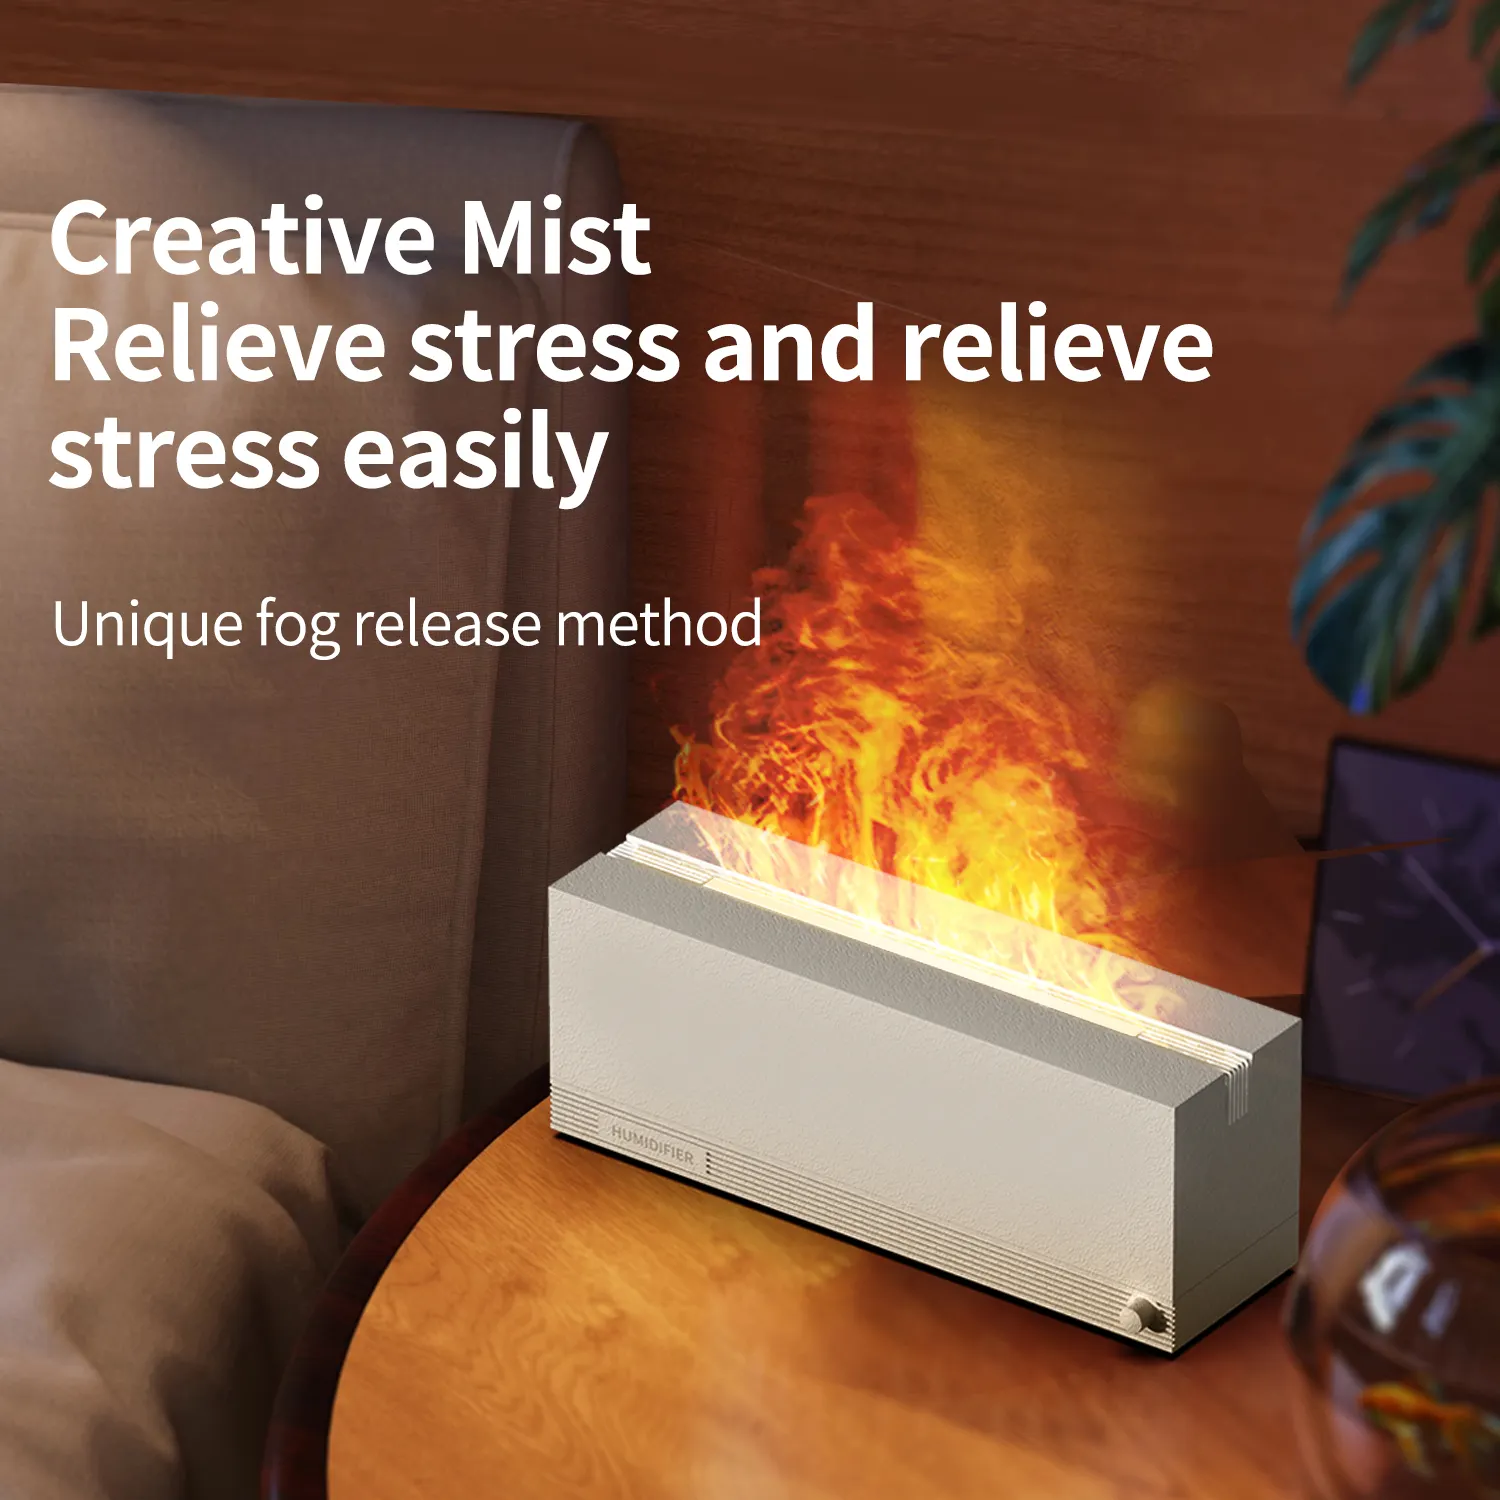 Nuovi arrivi caldi 3D 7 colori LED fuoco fiamma aromaterapia umidificatore d'aria macchina diffusore Aroma olio essenziale